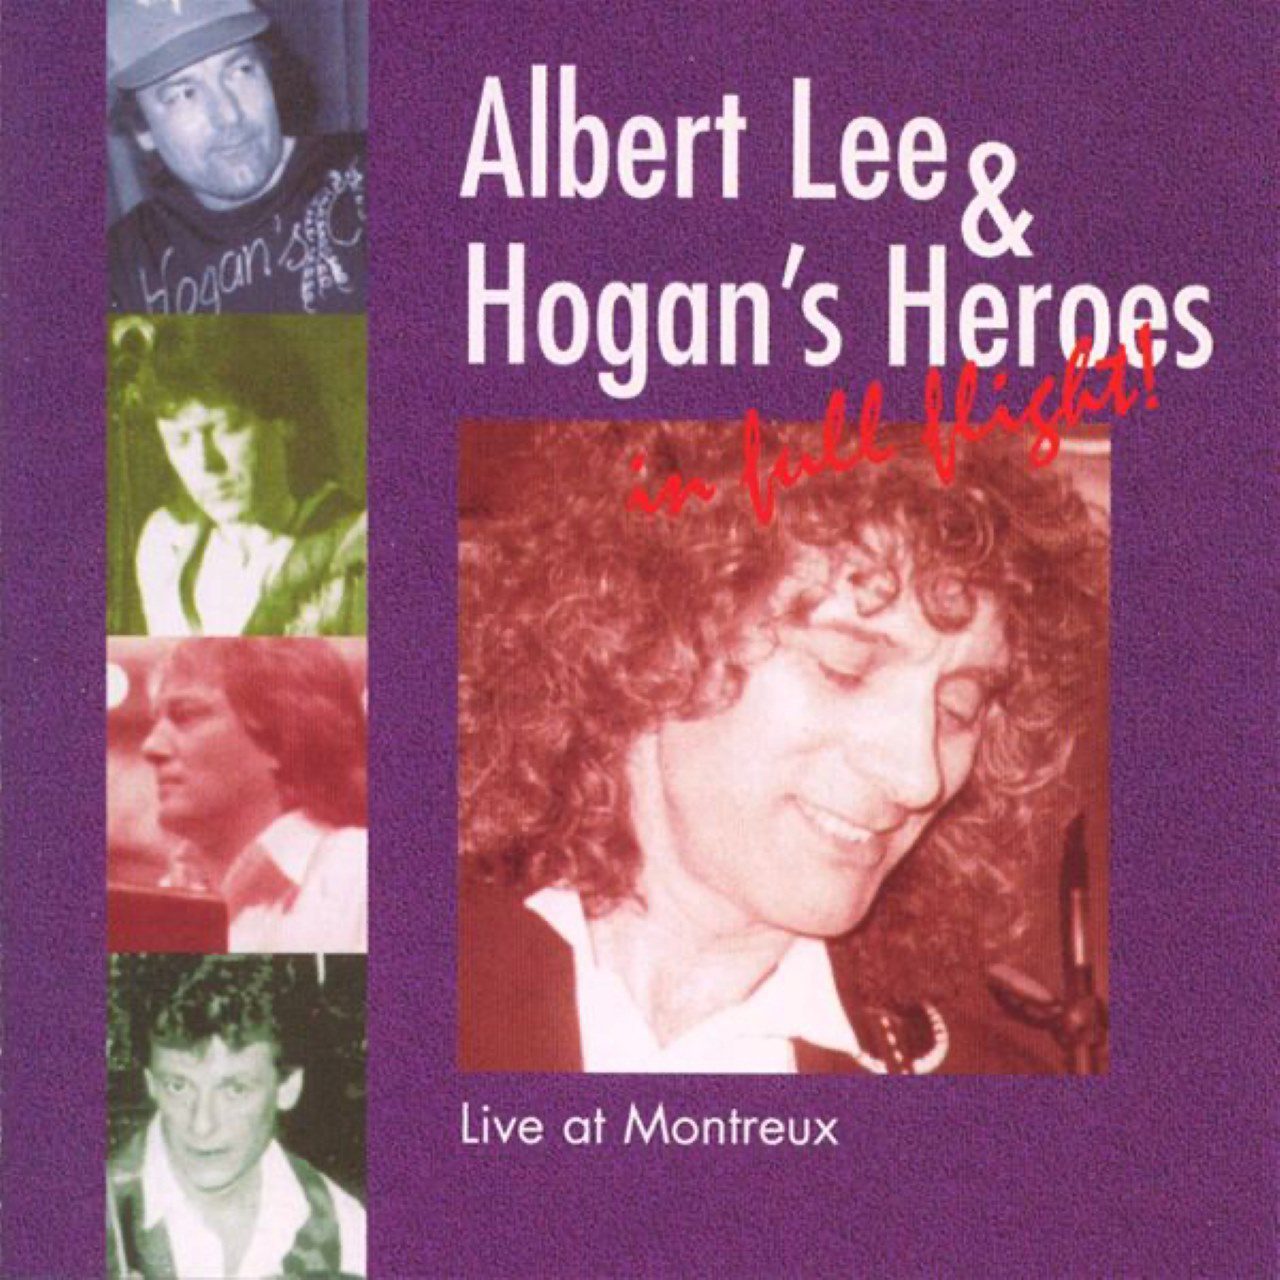 Albert Lee & Hogan’s Heroes – Live In Montreux cover album